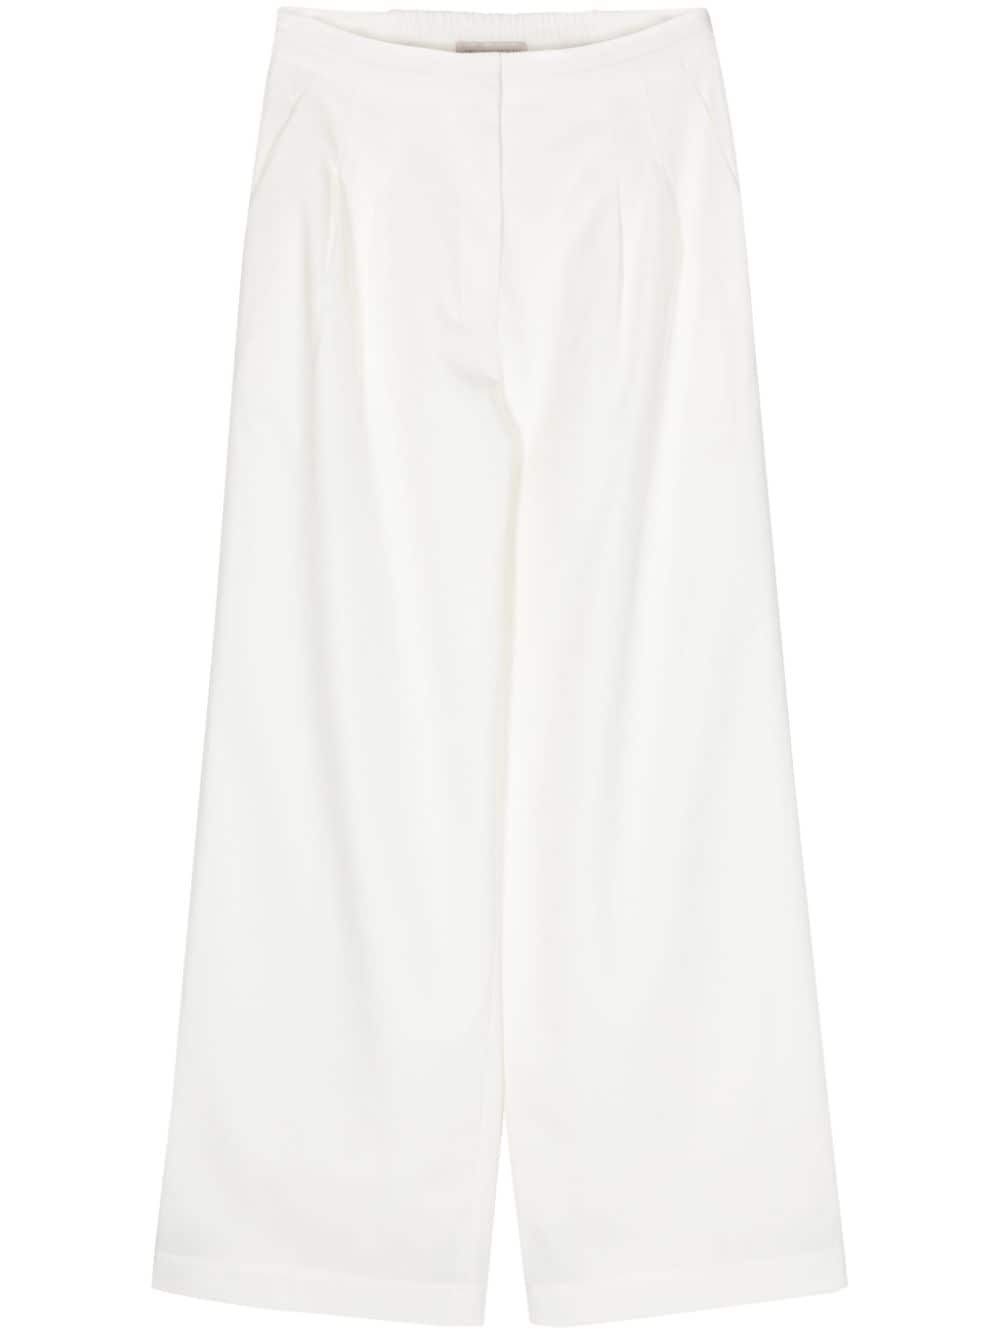 SHIATZY CHEN Plenteous Collection wide-leg trousers - White von SHIATZY CHEN